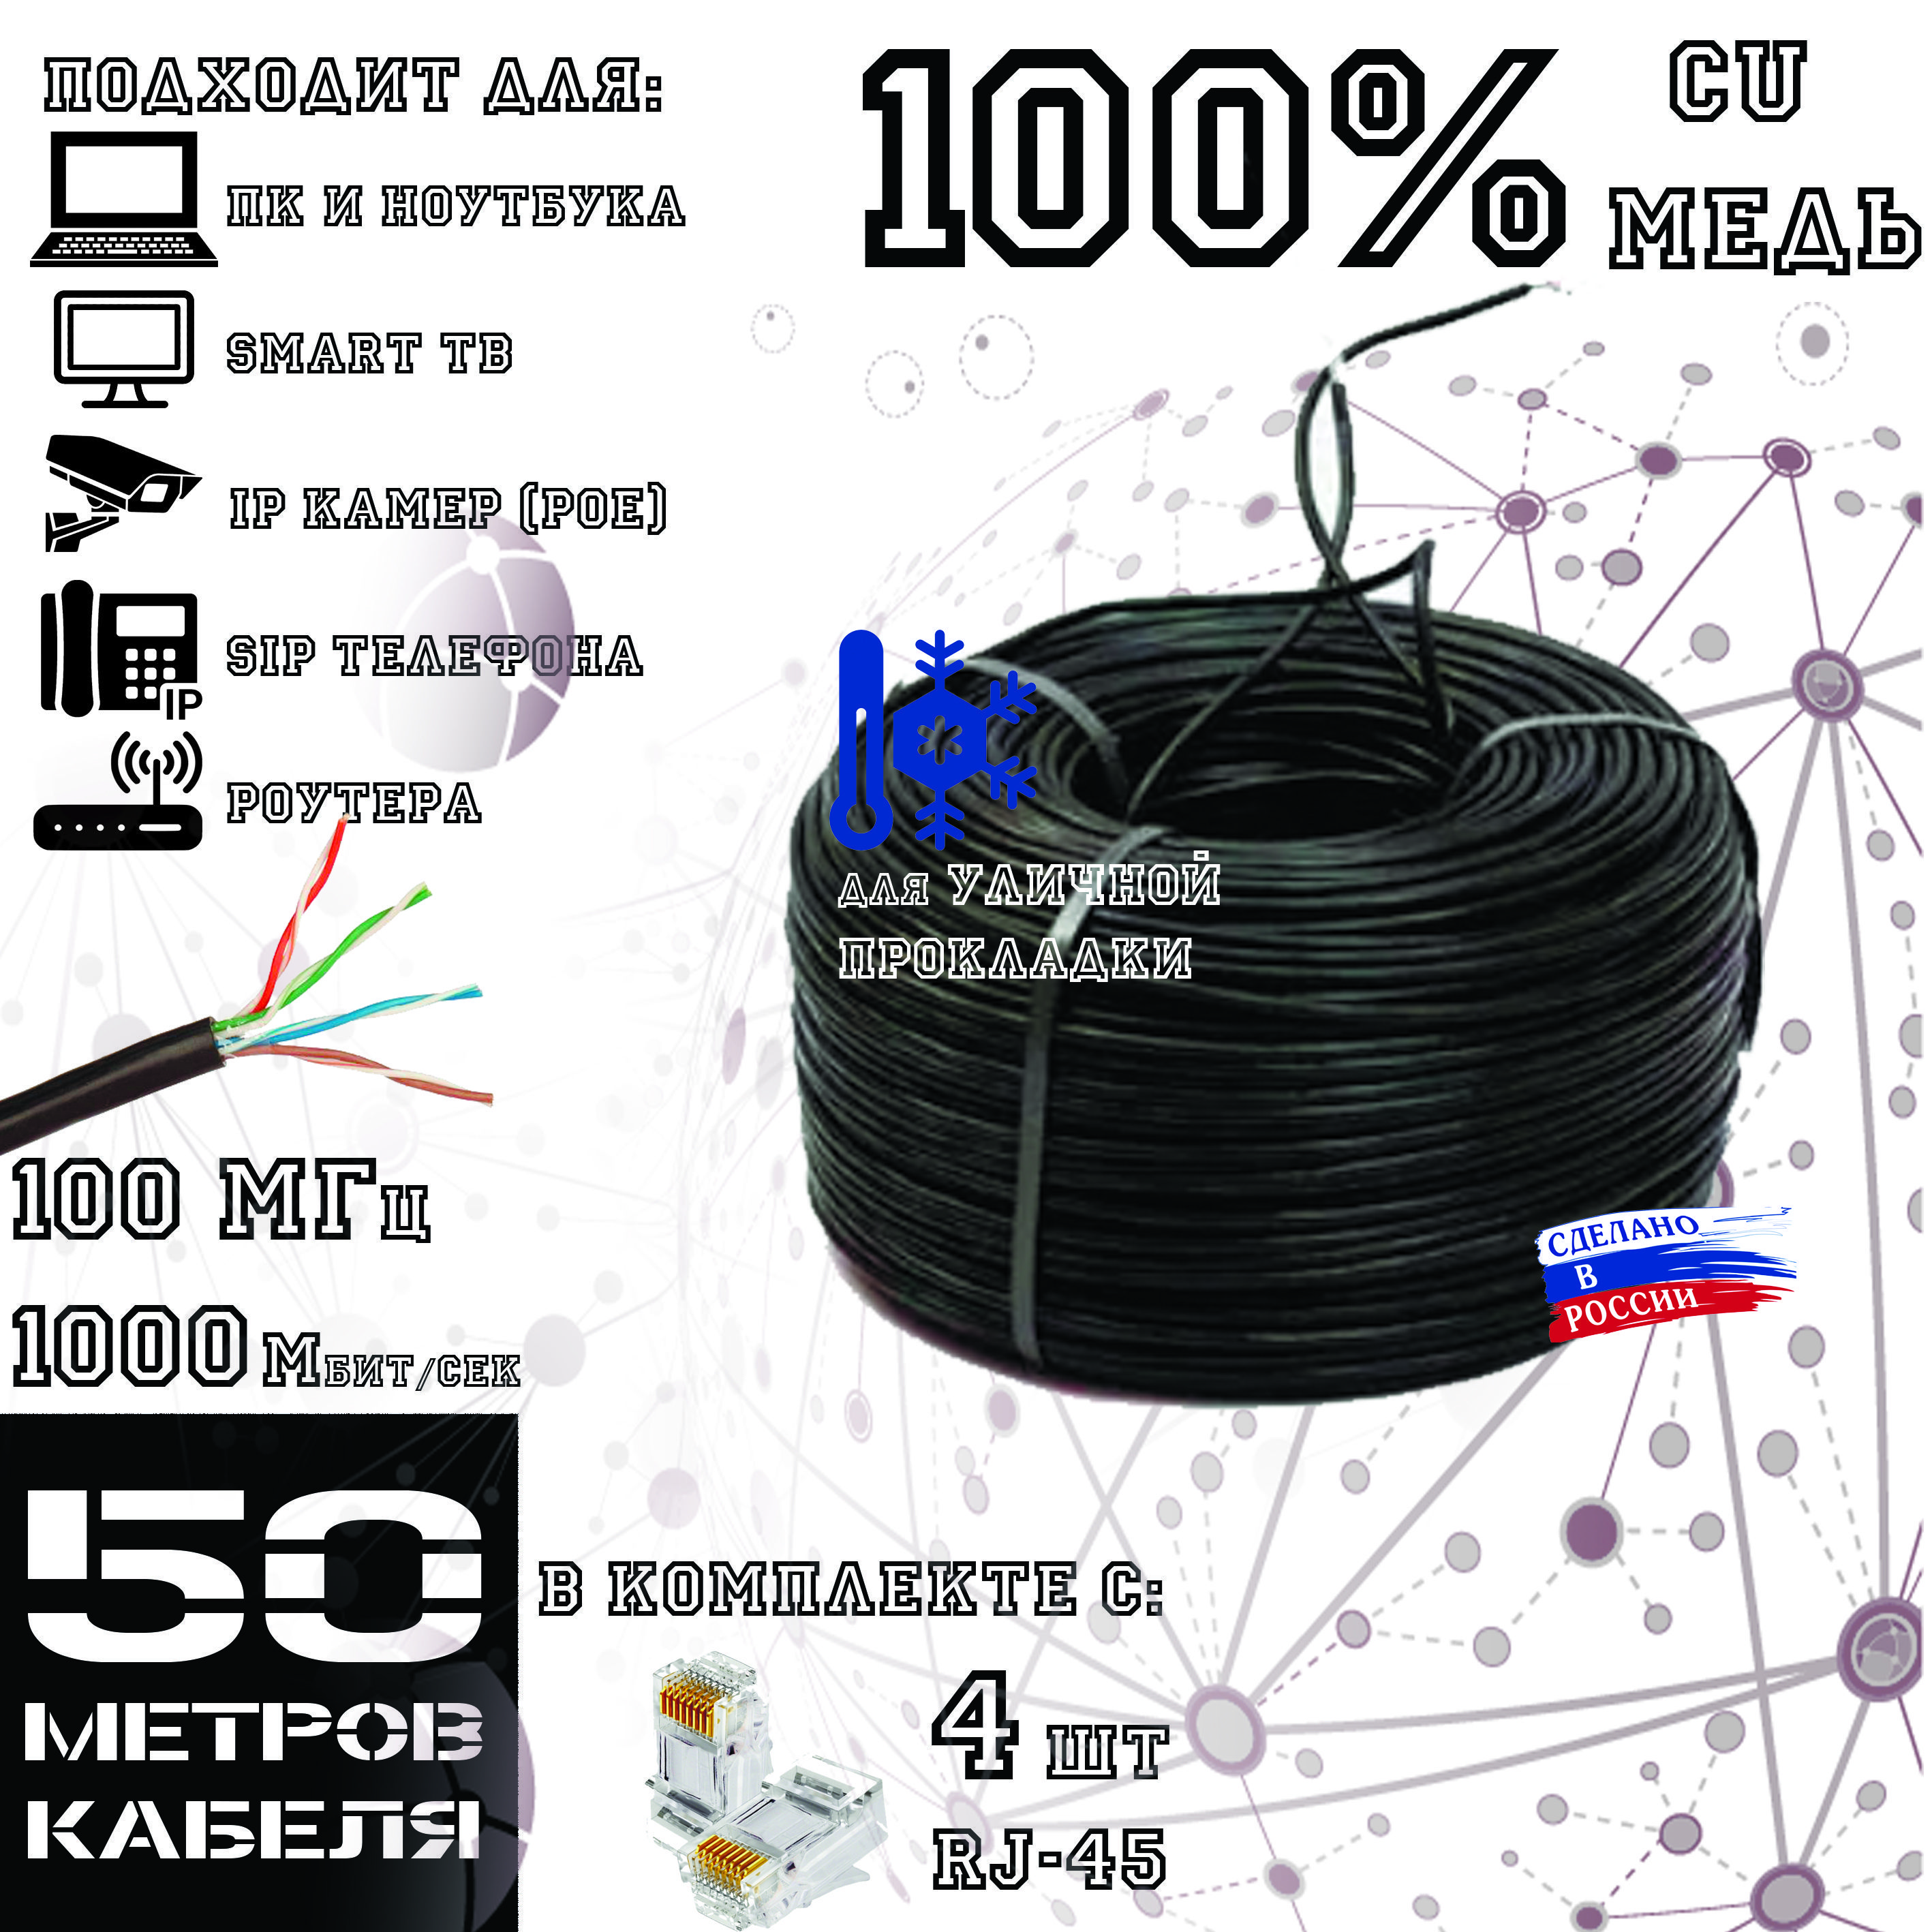 Высококачественный интернет кабель (витая пара) ПОЛИМЕТ, CU, UTP4 пары, Cat.5е